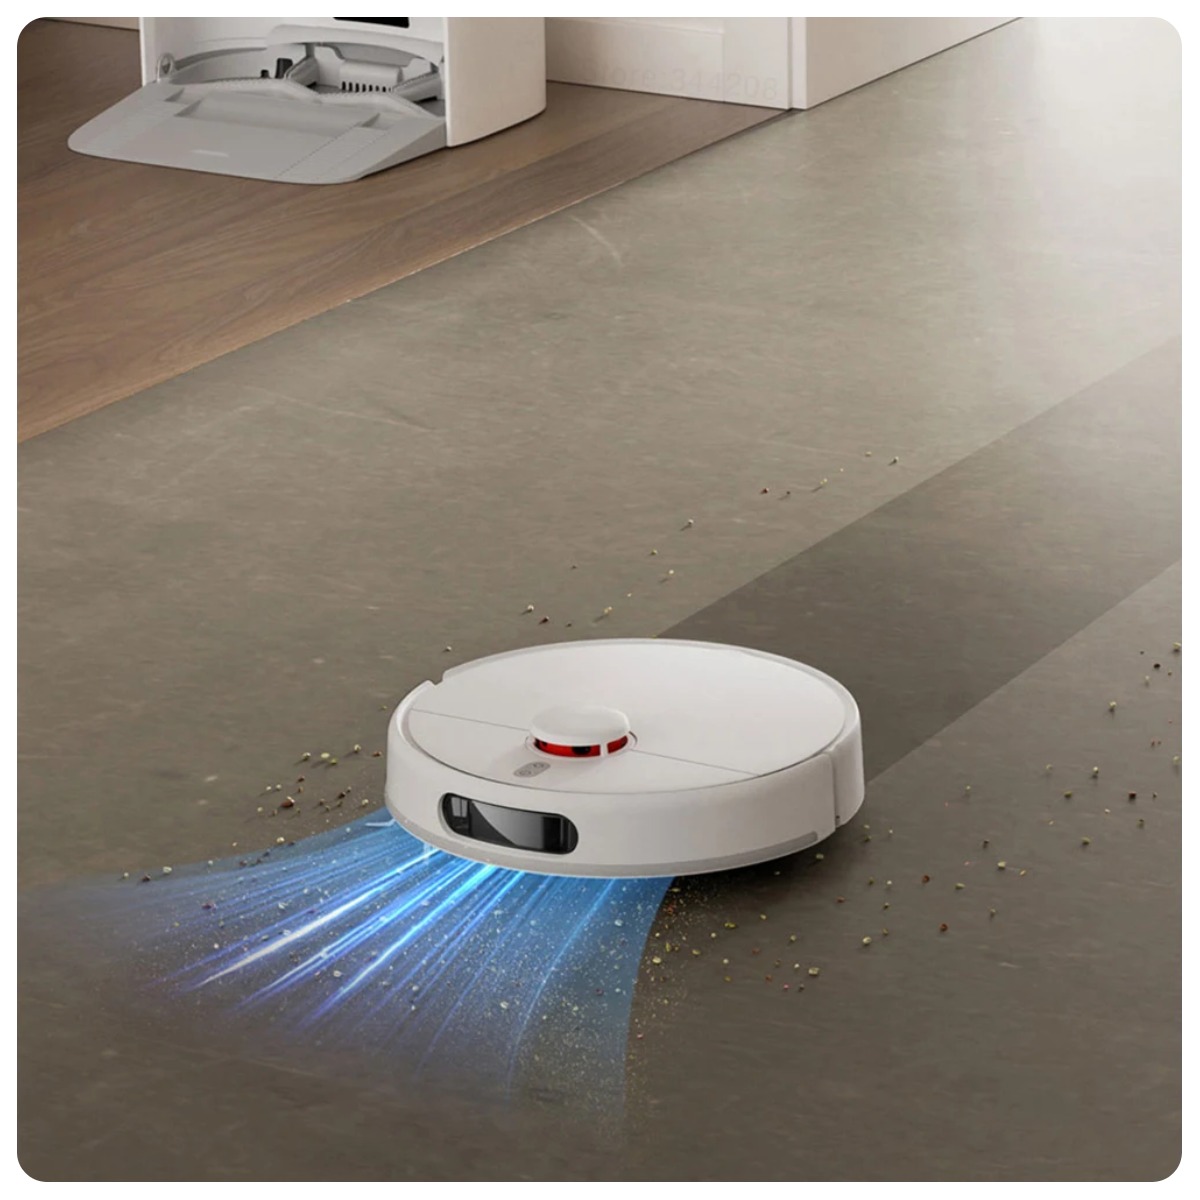 Mijia-Self-Cleaning-Robot-Vacuum-Mop-2-05